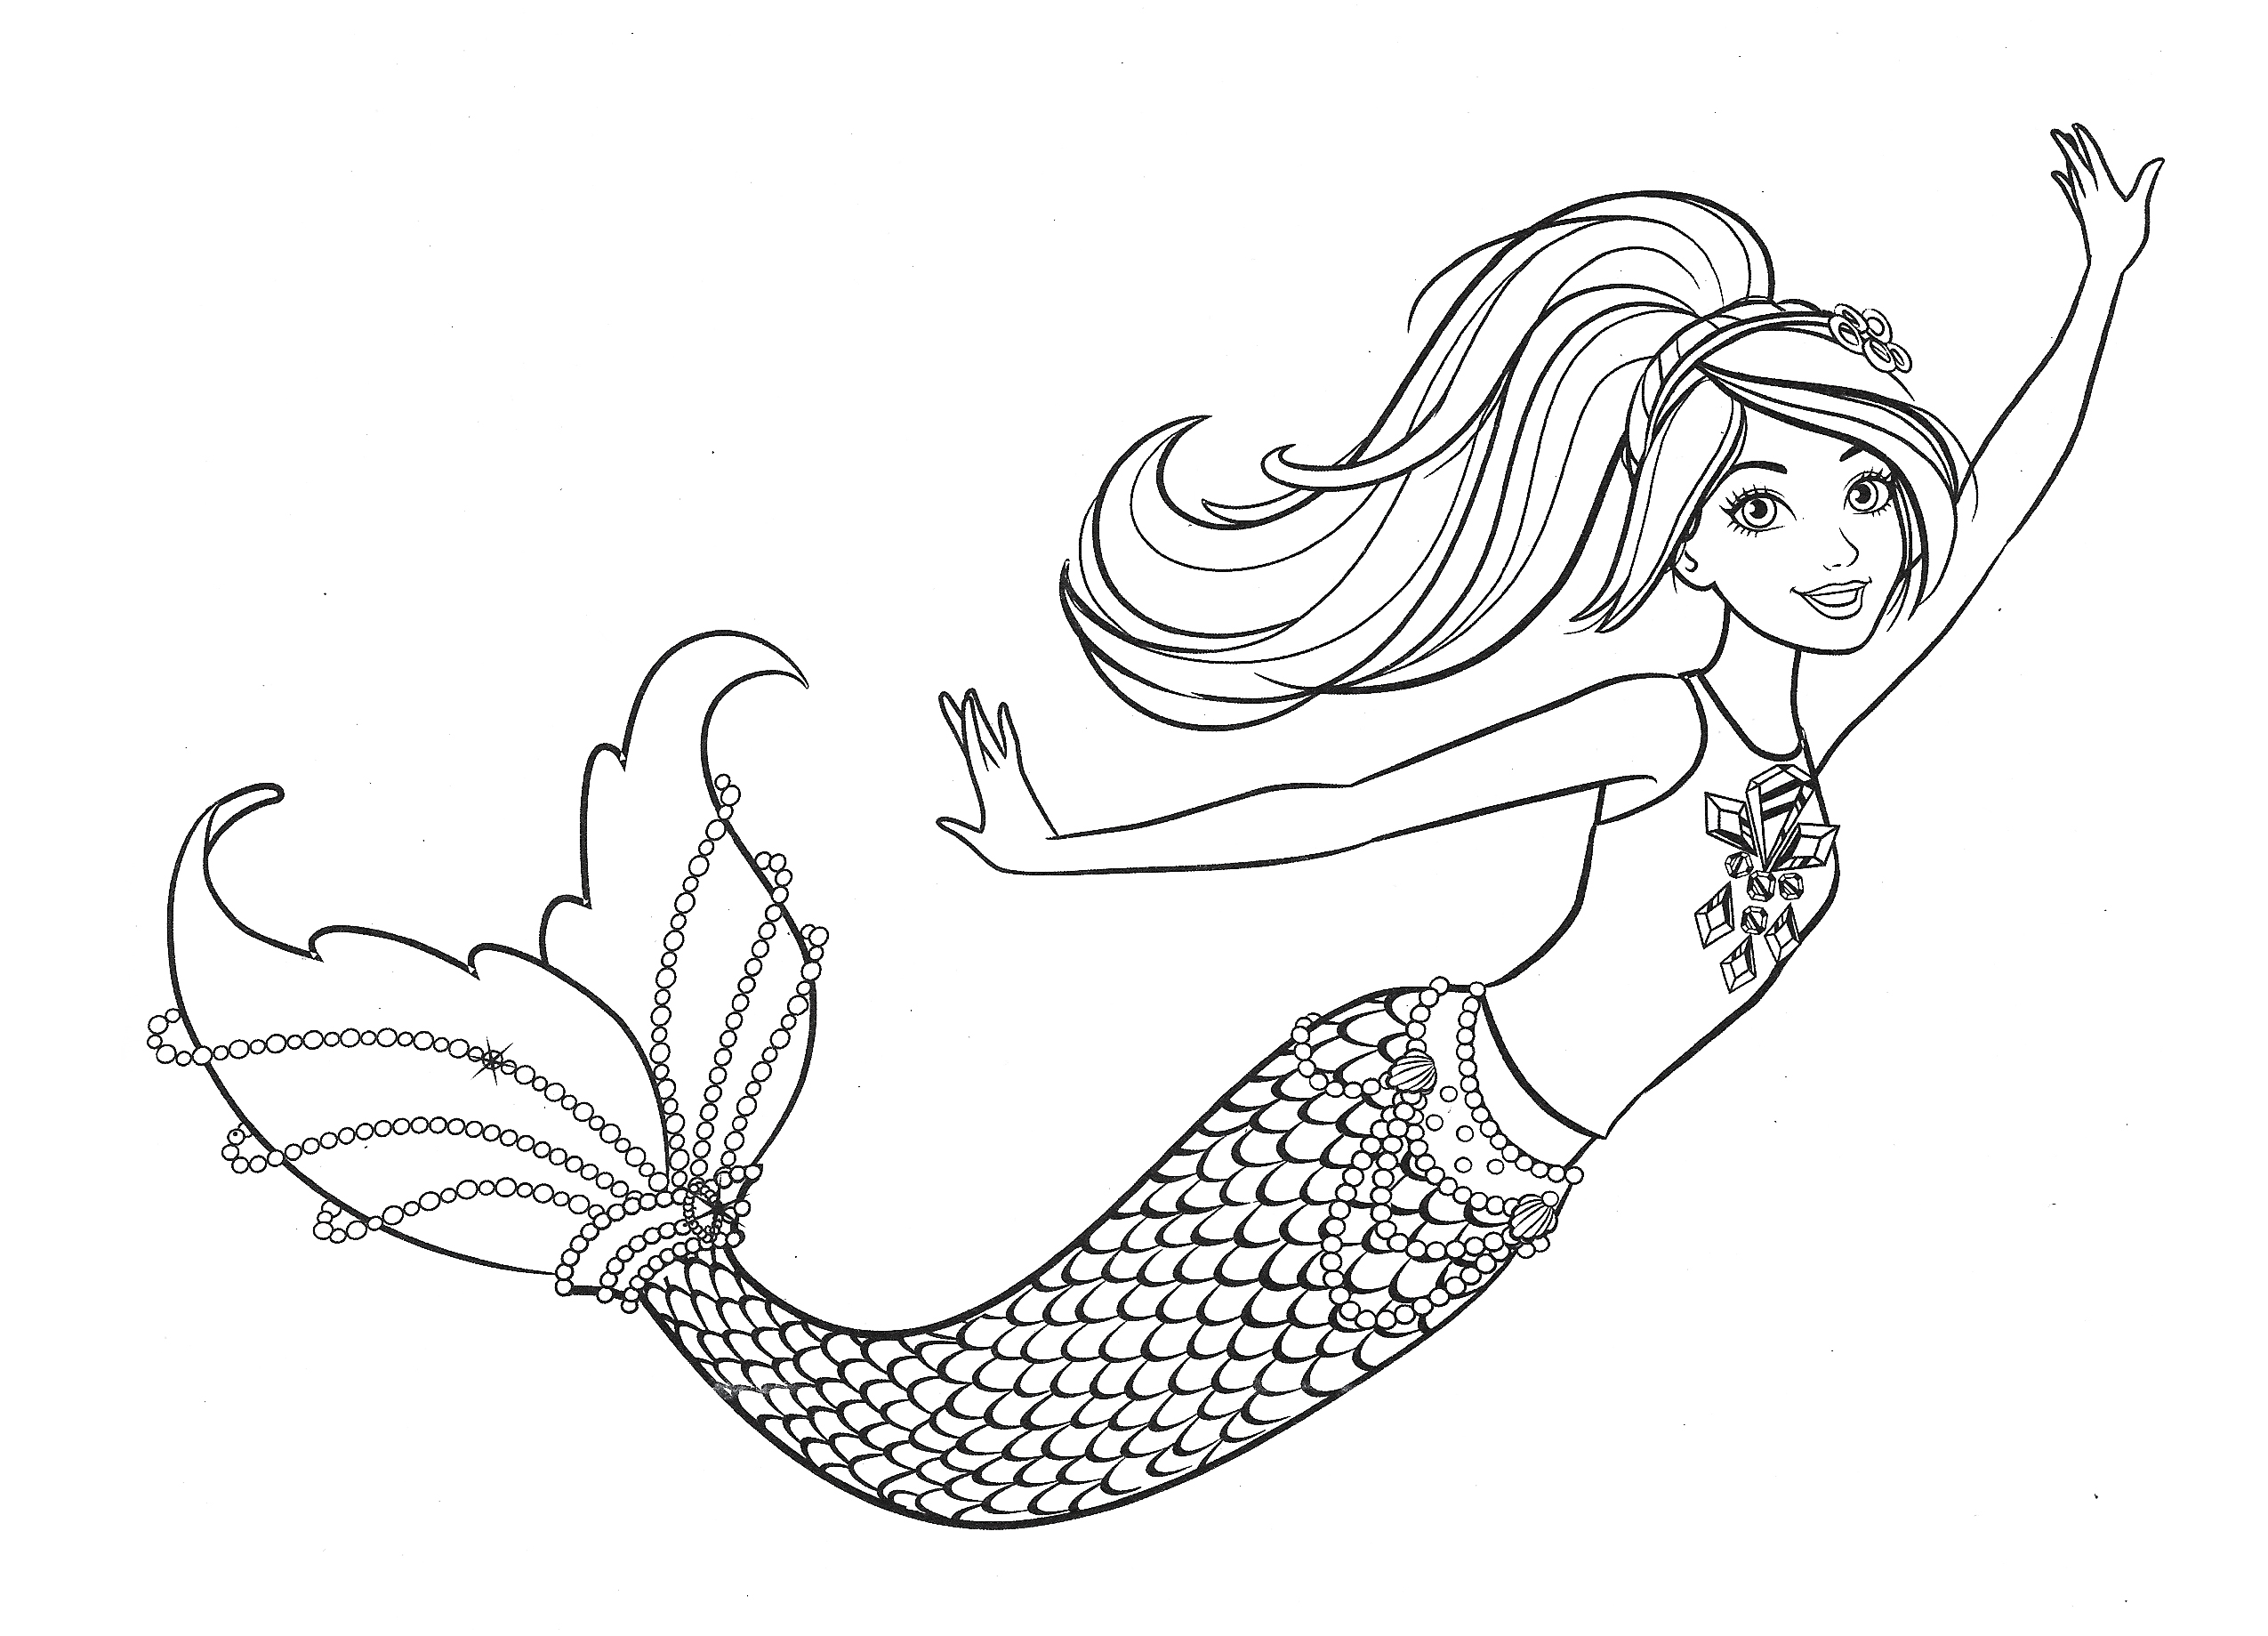 barbie-mermaid-coloring-page-in-2020-mermaid-coloring-pages-mermaid